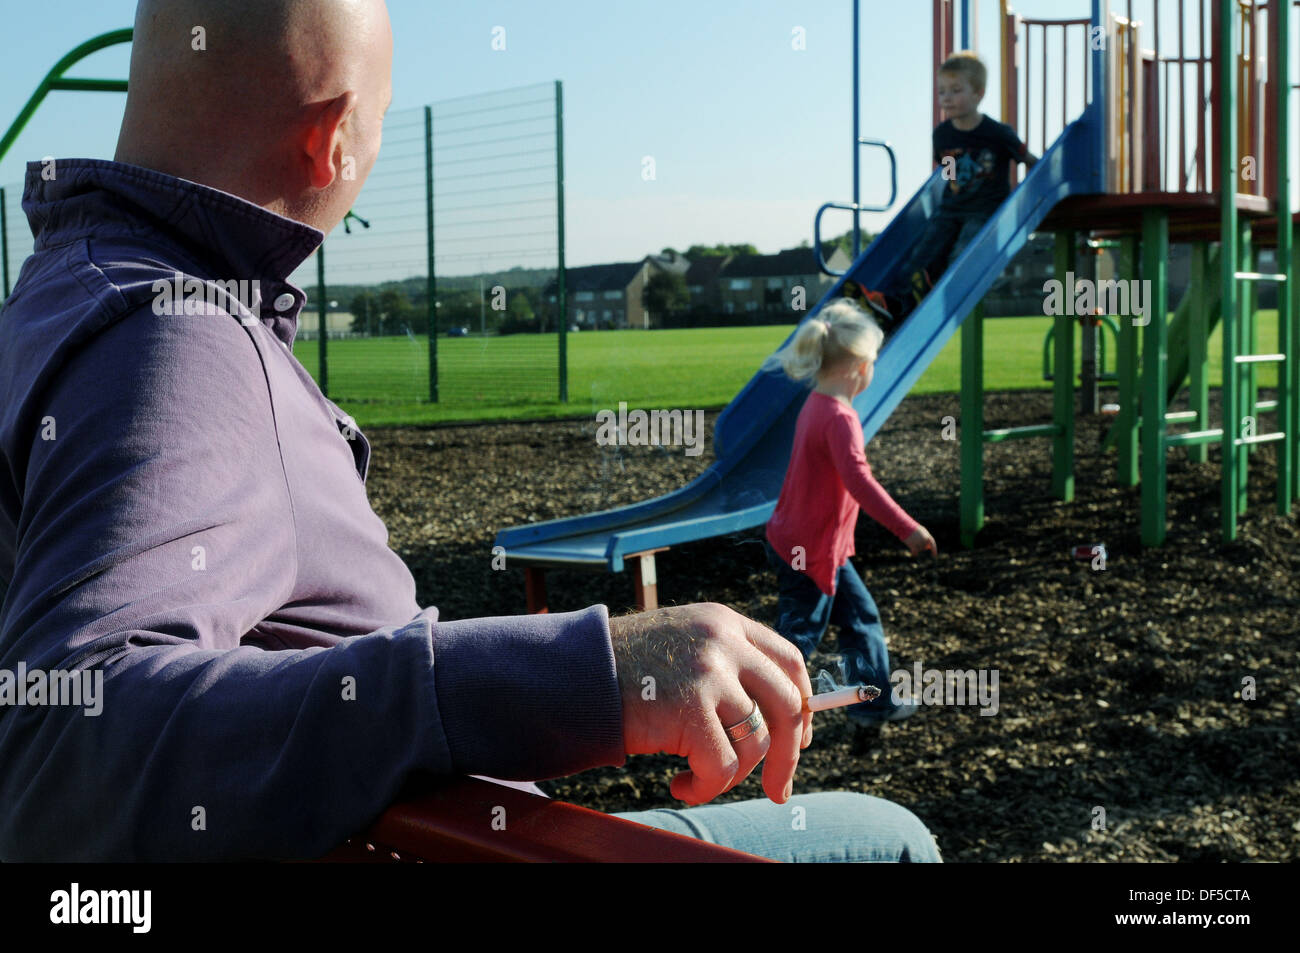 Mann Rauchen in einen Kinderspielplatz mit einem Mädchen und Jungen spielen auf einer Folie Stockfoto